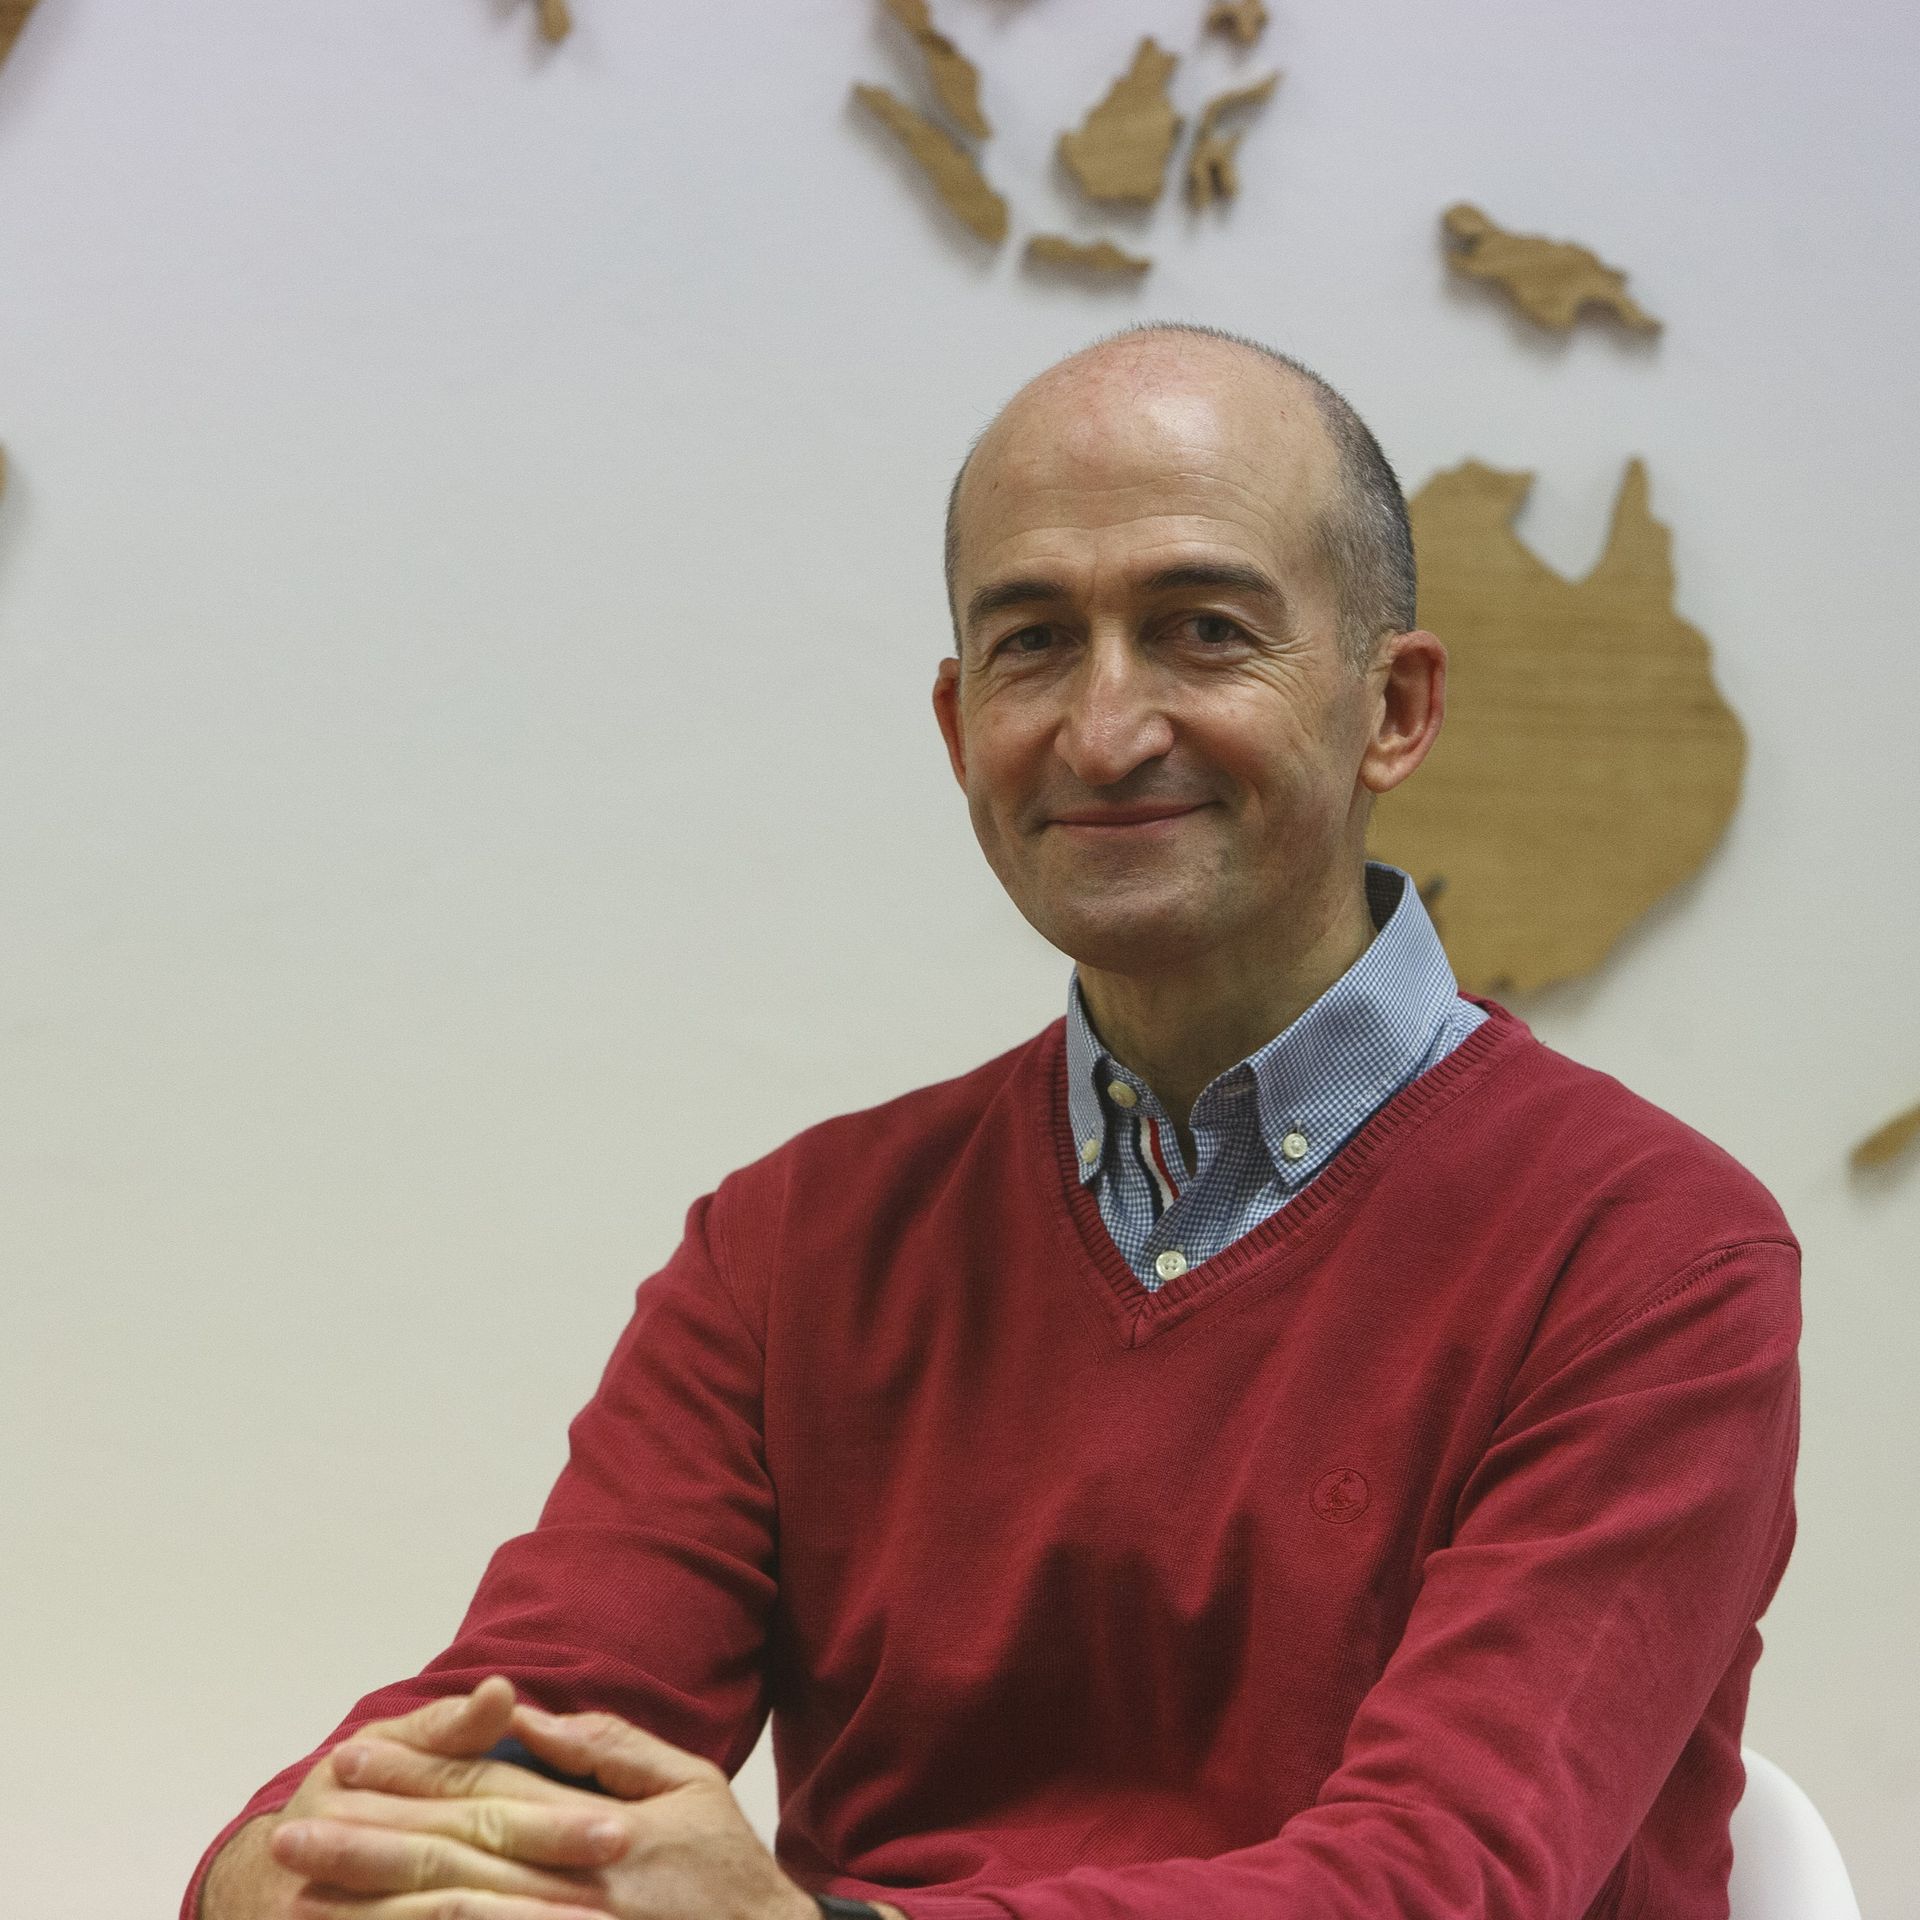 Photo of José Luis Molina, CEO of Hispatec